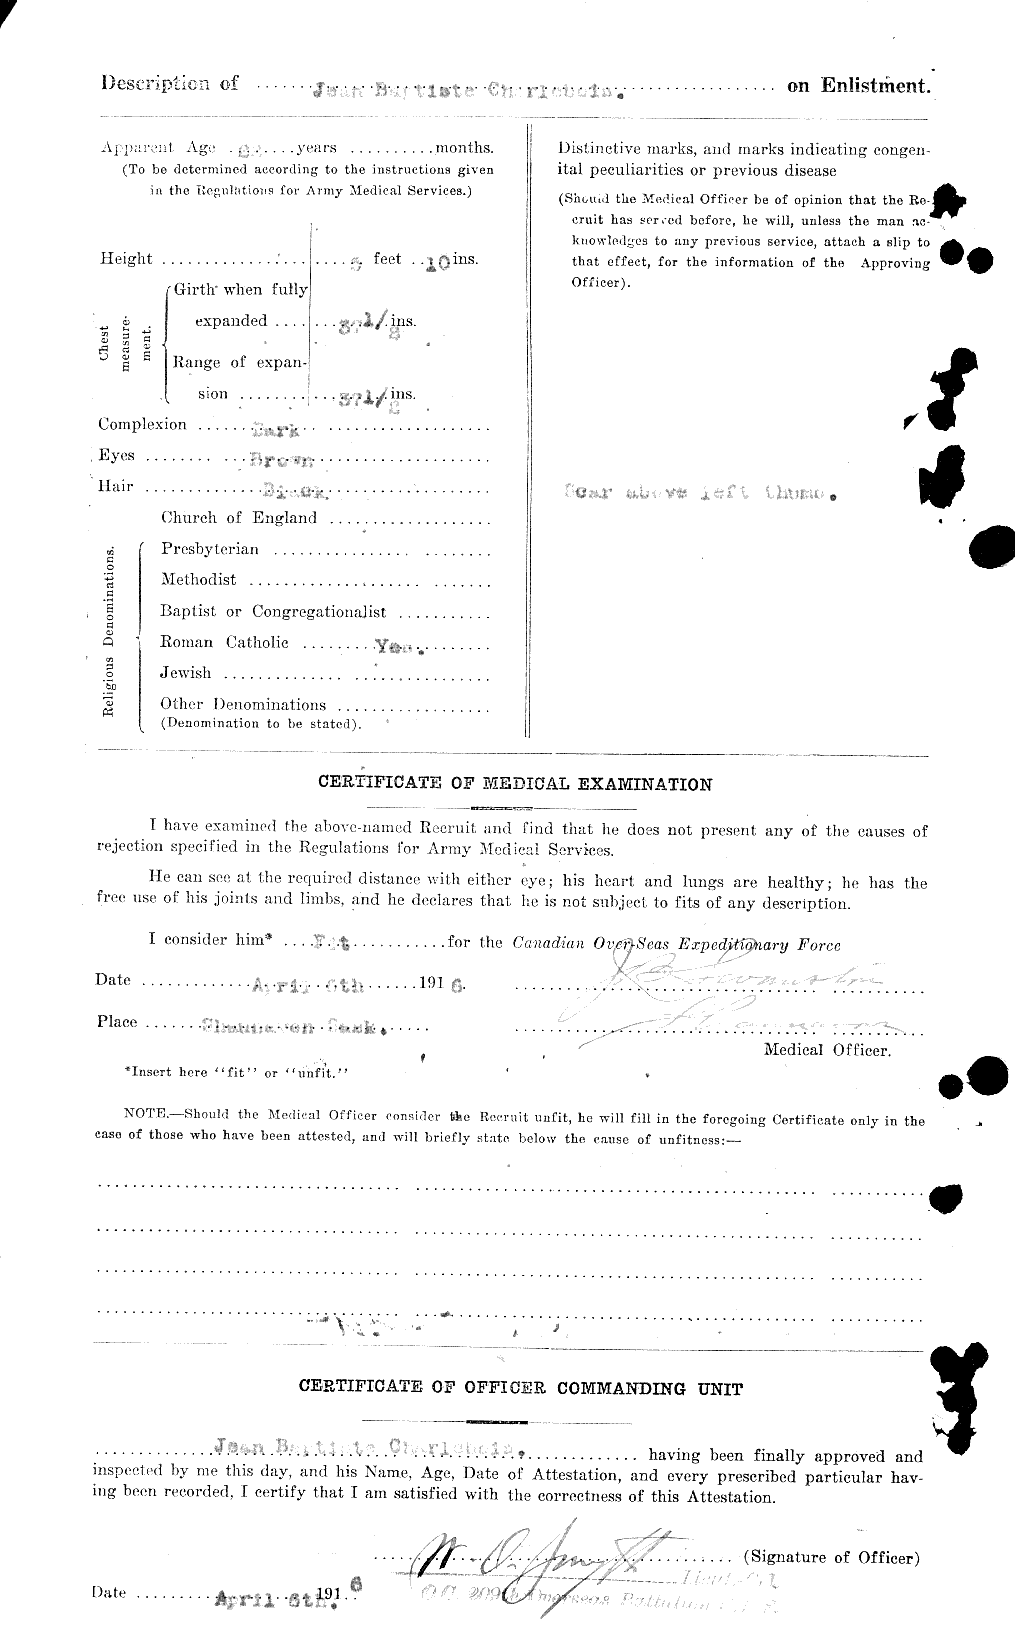 Dossiers du Personnel de la Première Guerre mondiale - CEC 015619b